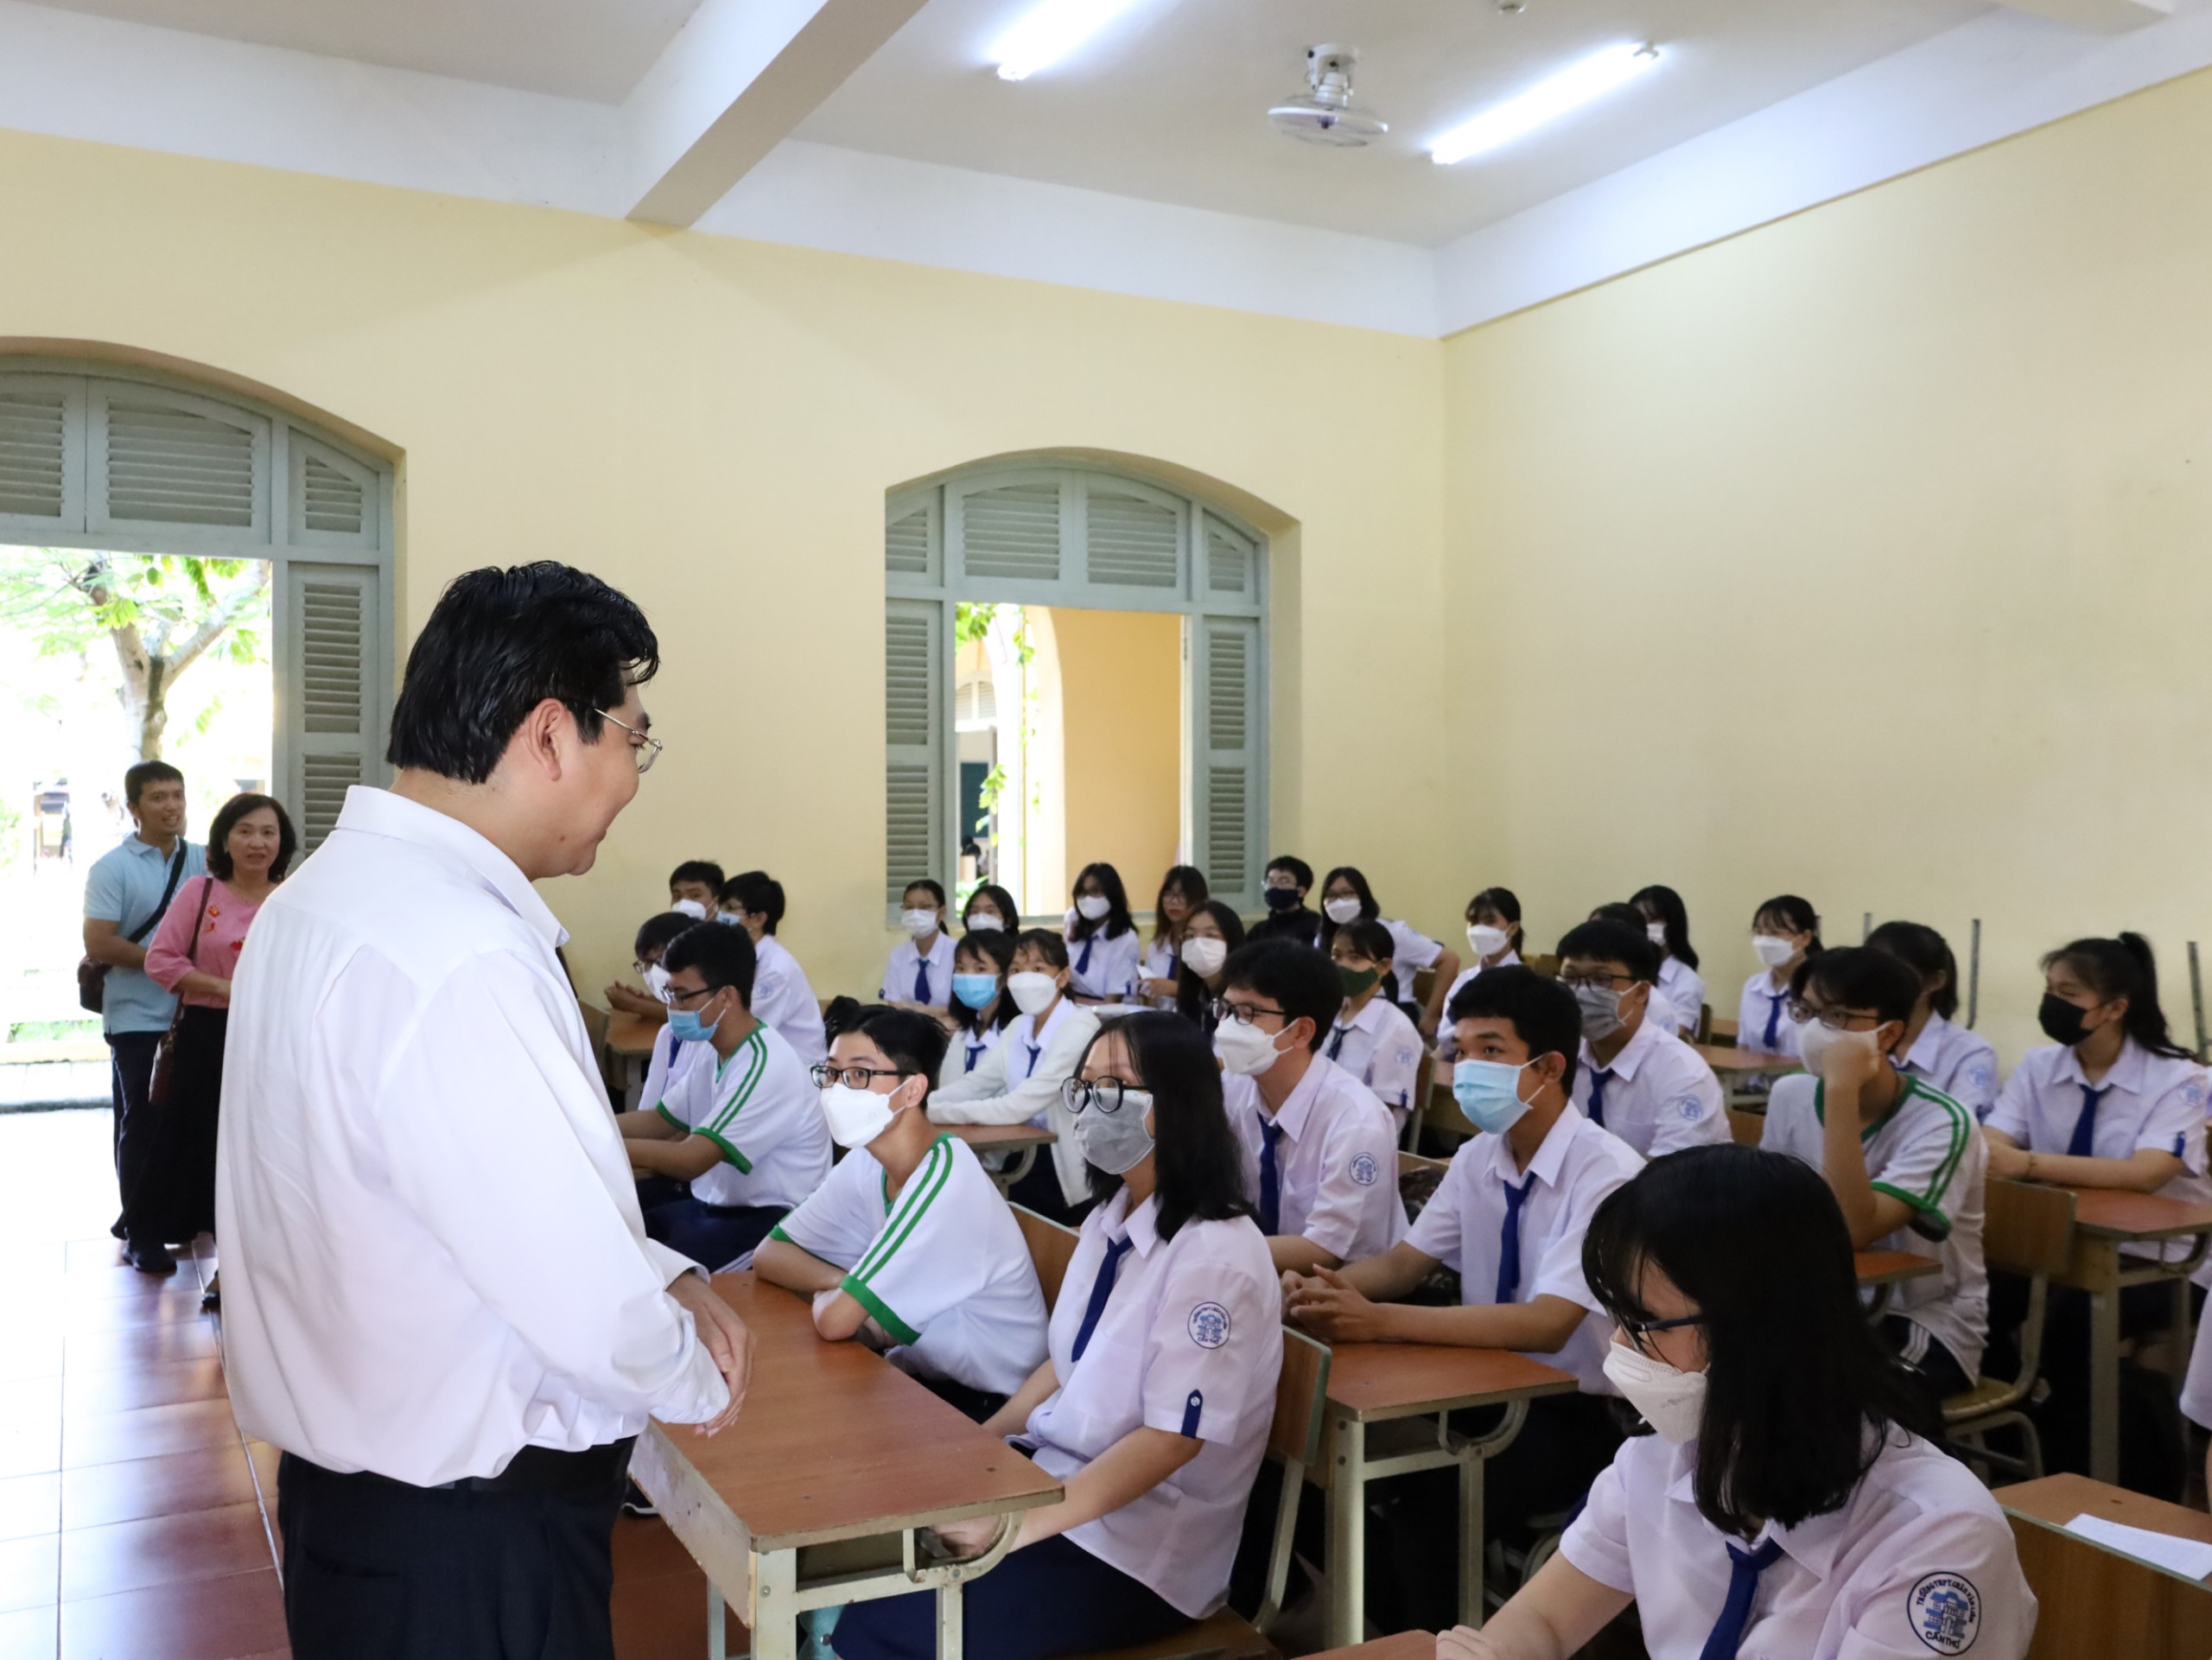 Ông Trần Thanh Bình - Giám đốc Sở Giáo dục và Đào tạo TP. Cần Thơ thăm hỏi các em học sinh và nắm tình hình việc triển khai chương trình GDPT lớp 10 mới tại Trường THPT Châu Văn Liêm, quận Ninh Kiều.